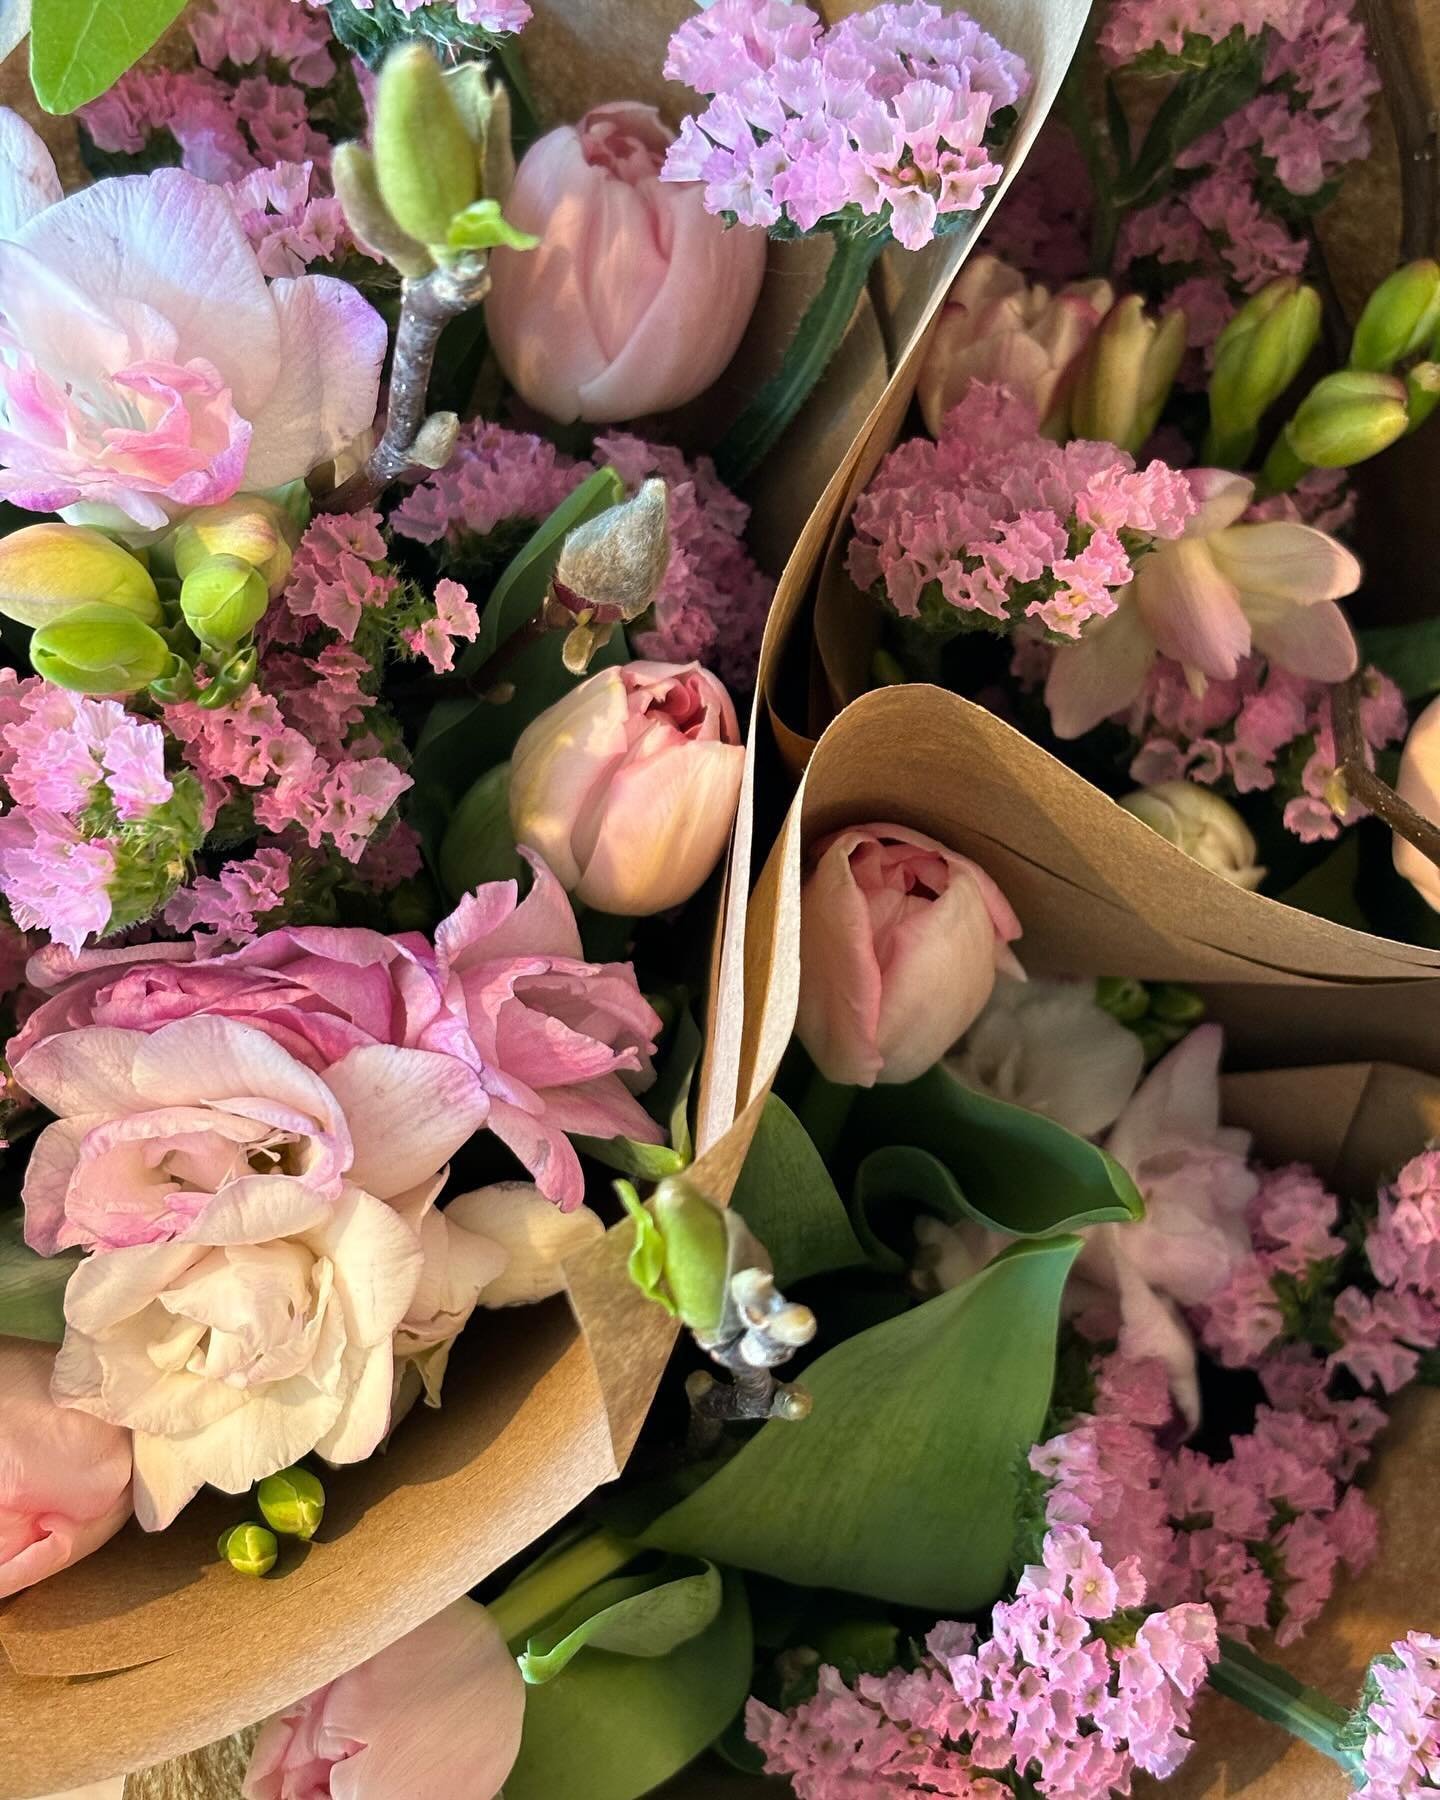 Highlight du vendredi : harmonie de rose b&eacute;b&eacute; dans ces quelques petits bouquets l&eacute;gers ! Tulipe, freesia, branche de magnolia porteuse de bourgeons et statice 🌸 Loooove it 👌 !
Encore 2 dispos pour samedi! -18$

L&rsquo;Abri du 